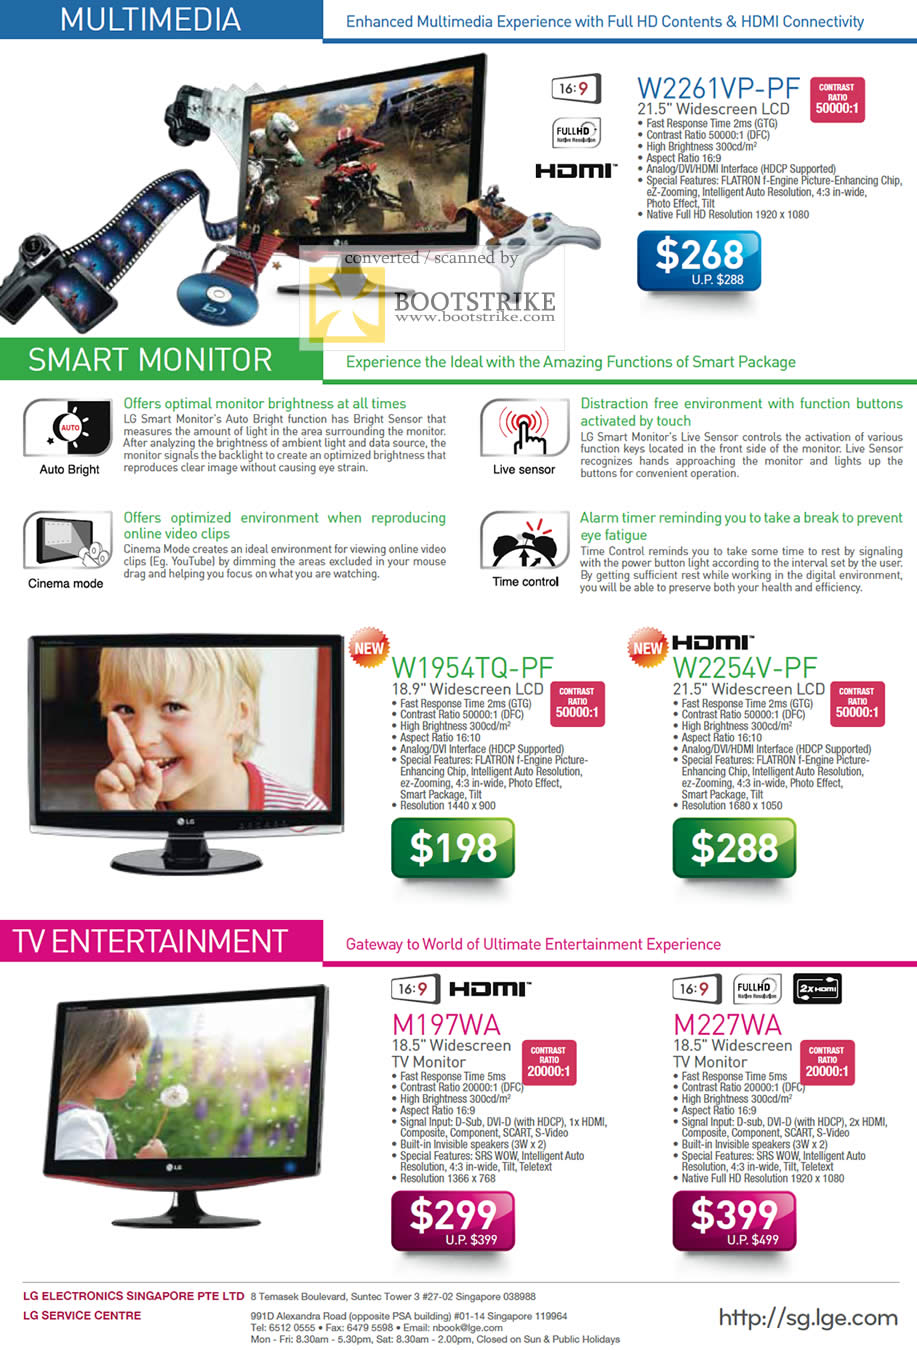 PC Show 2009 price list image brochure of LG LCD Monitors TV W2261VP W1954TQ W2254V M197WA M227WA